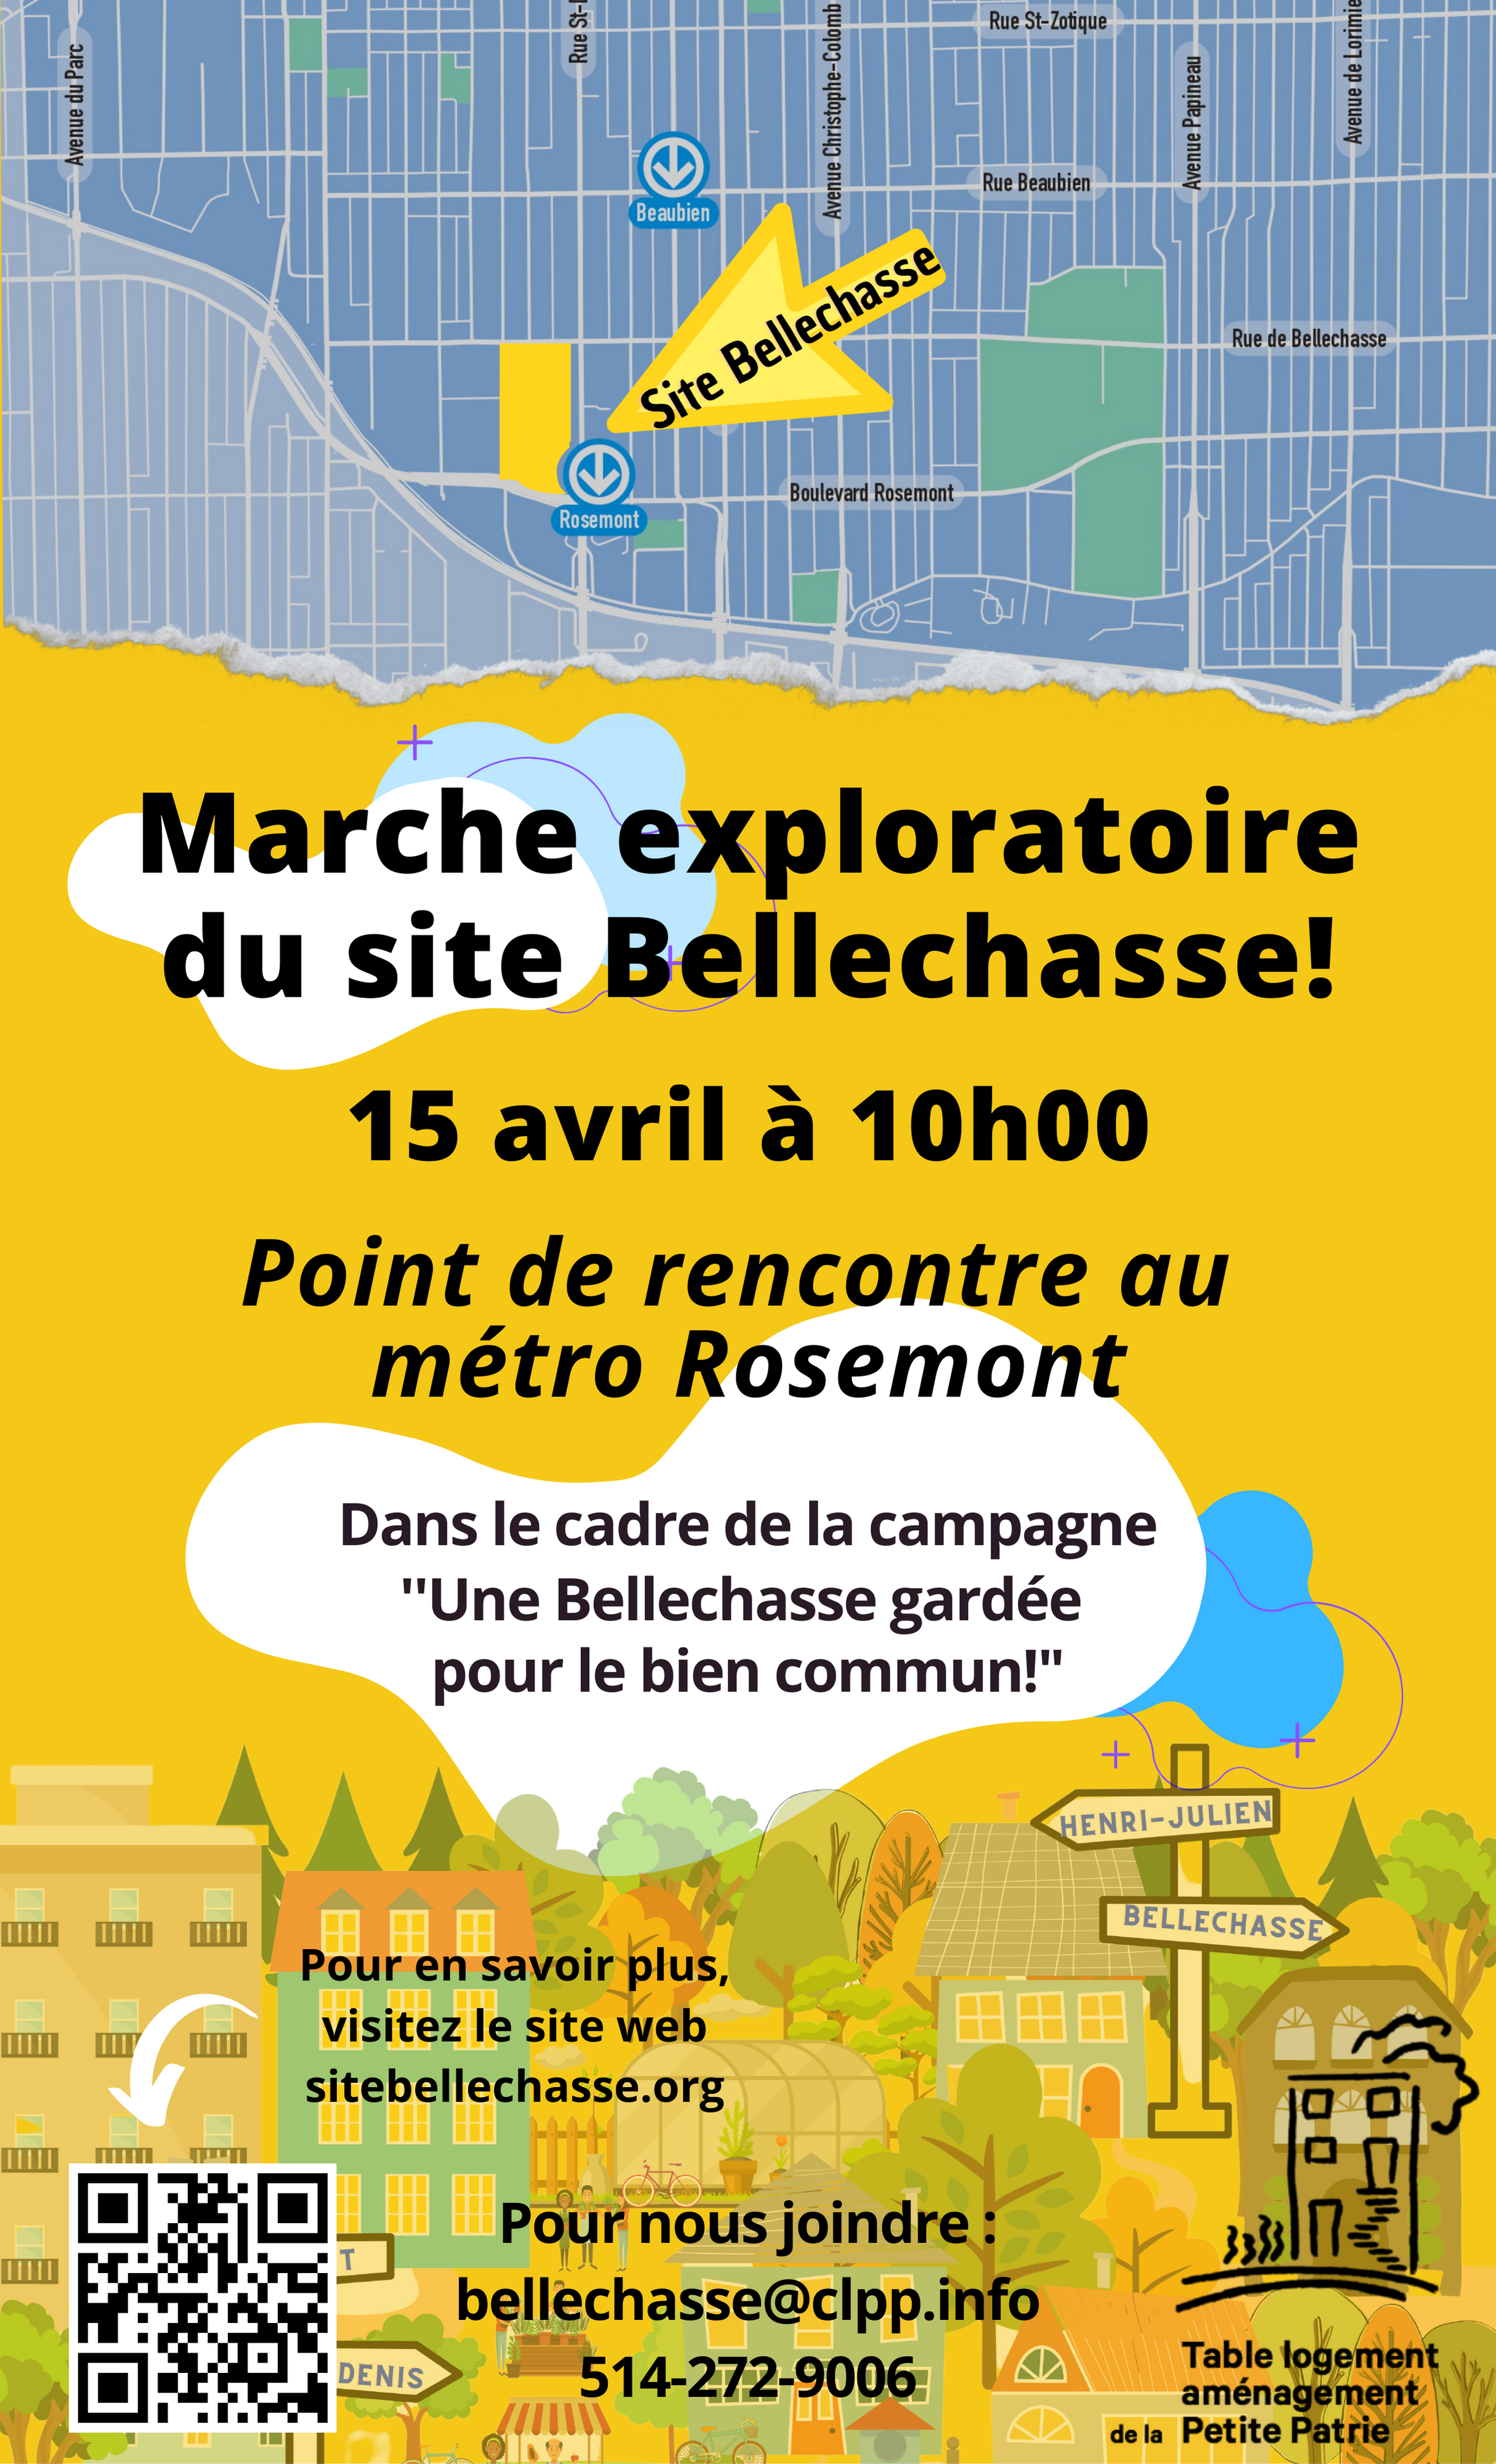 Marche exploratoire du site Bellechasse le 15 avril prochain!